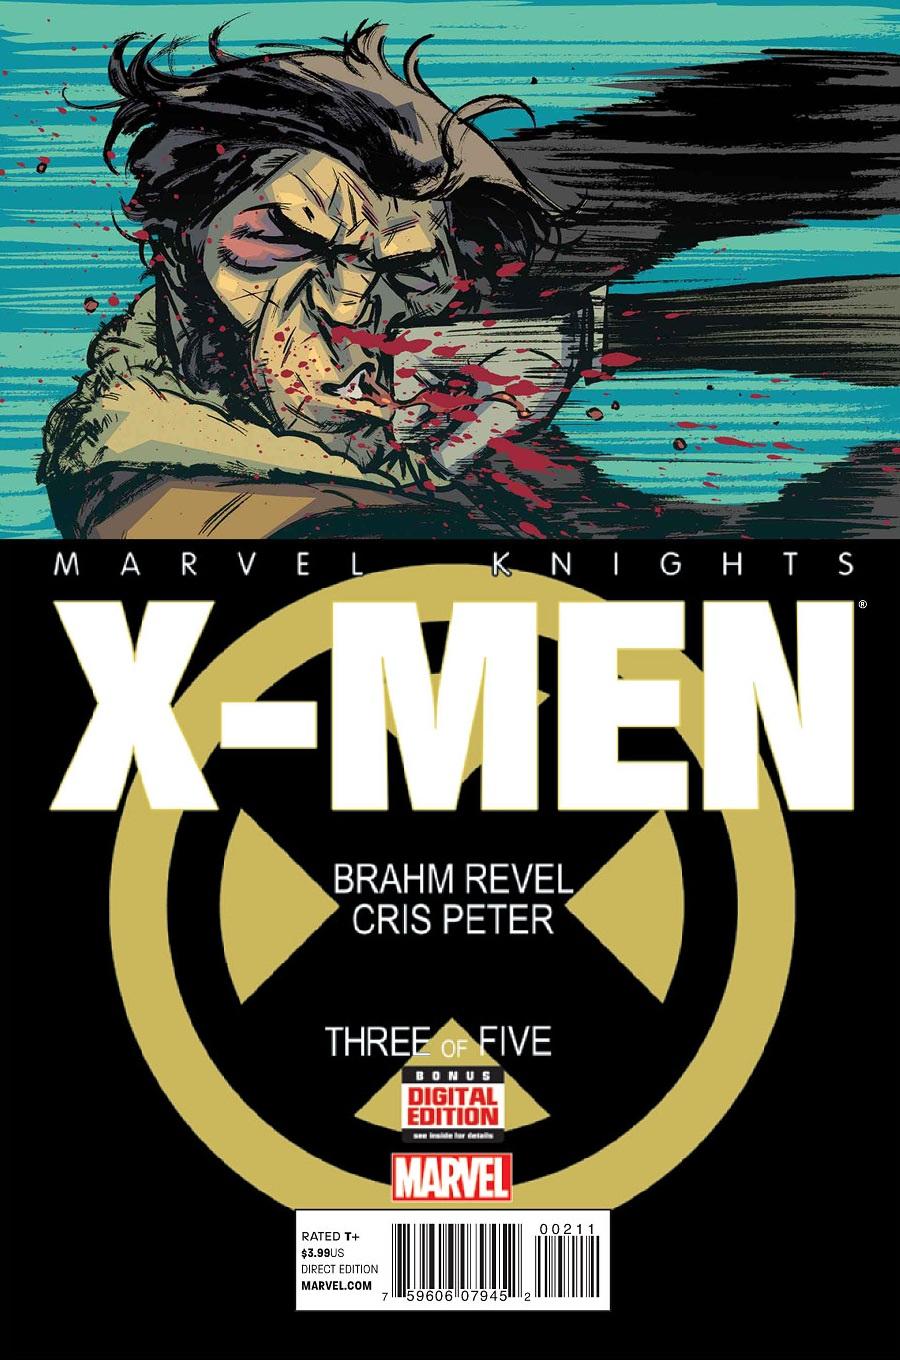 Marvel Knights: X-Men Vol. 1 #3